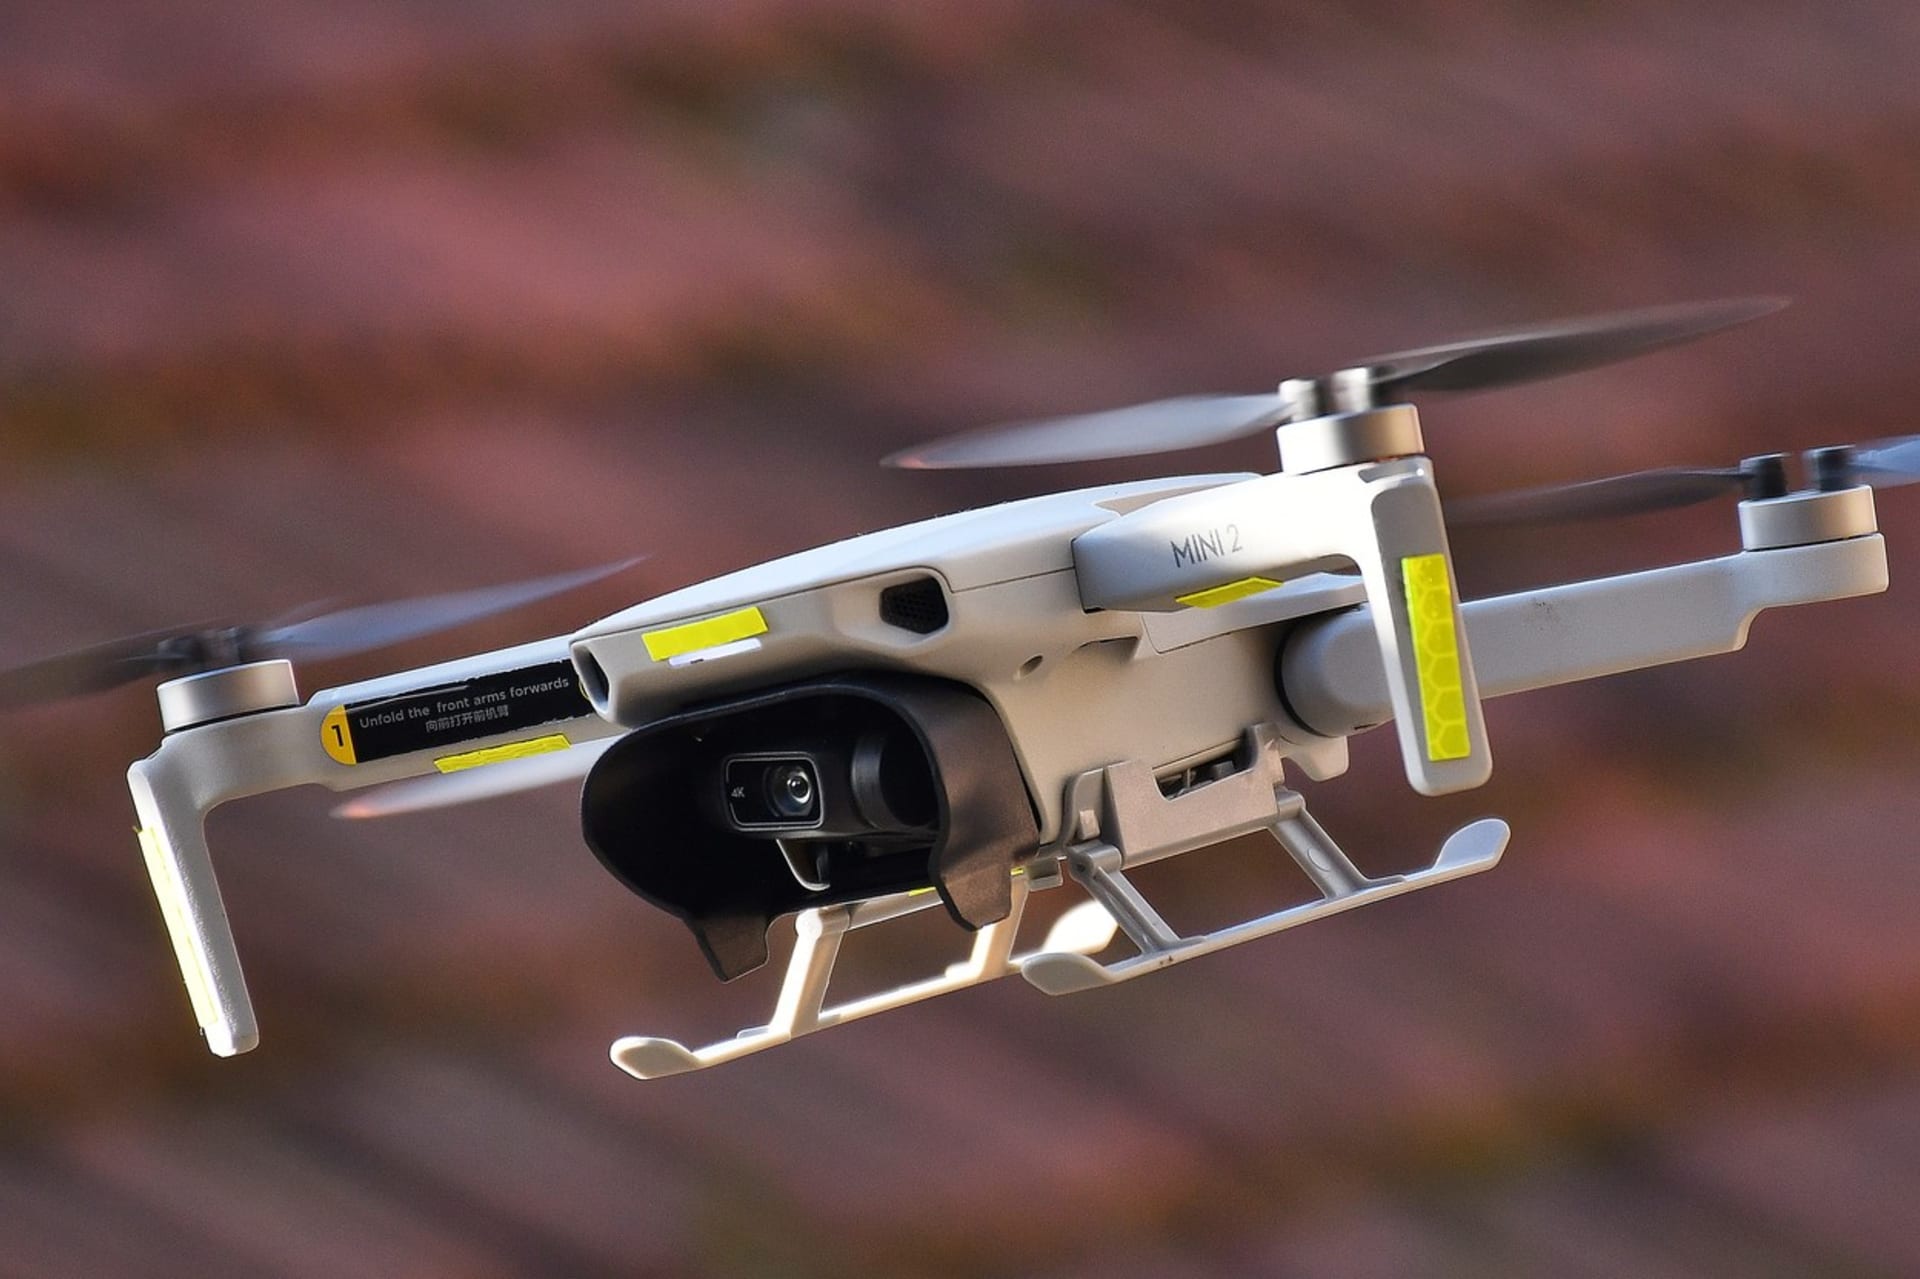 Moderní drony umí pořídit velice kvalitní fotografie a videa ve vysokém rozlišení.